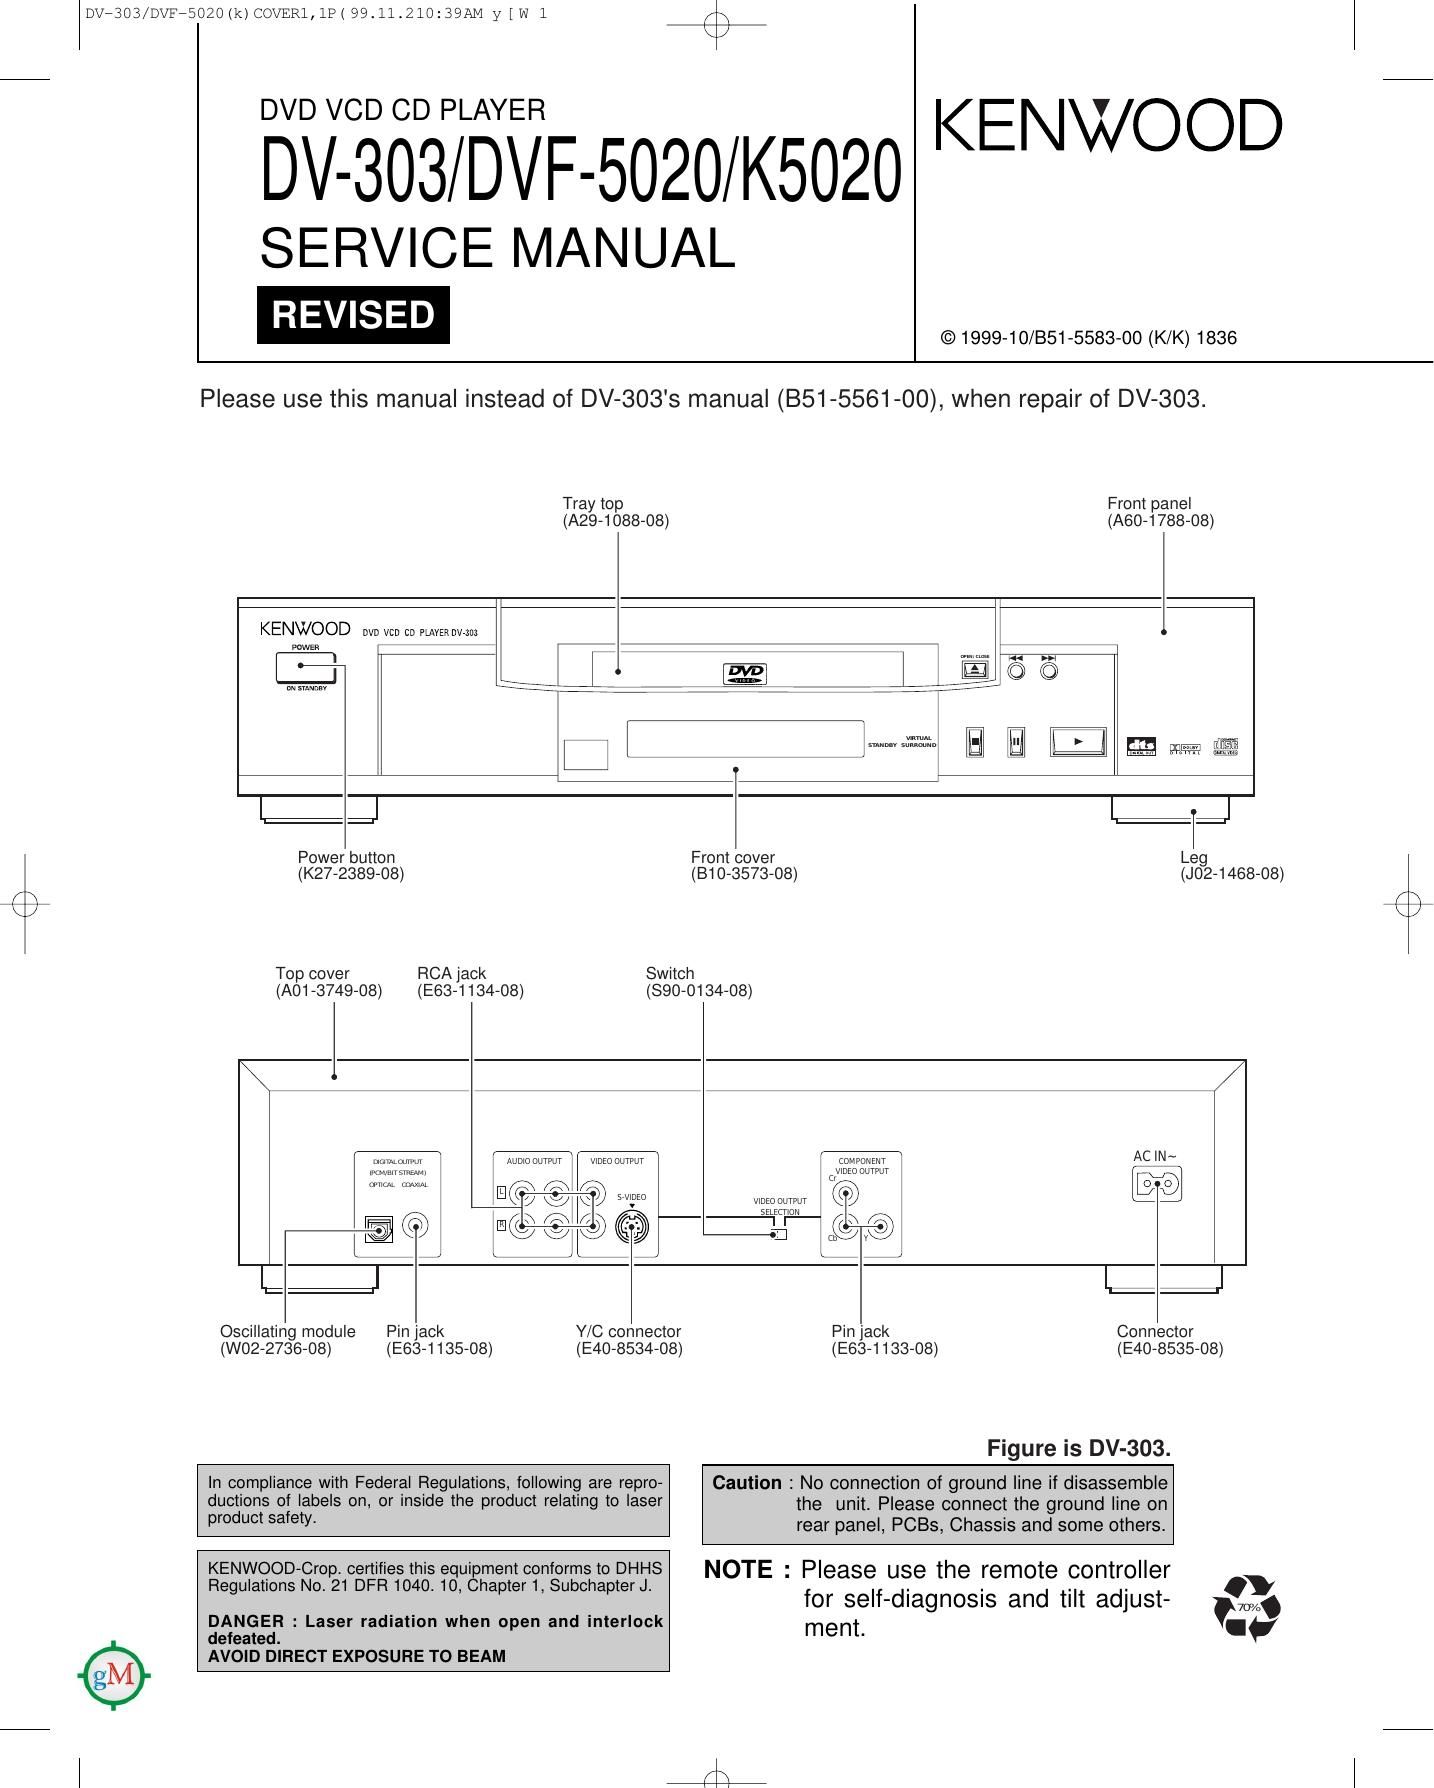 Kenwood DVFK 5020 Service Manual